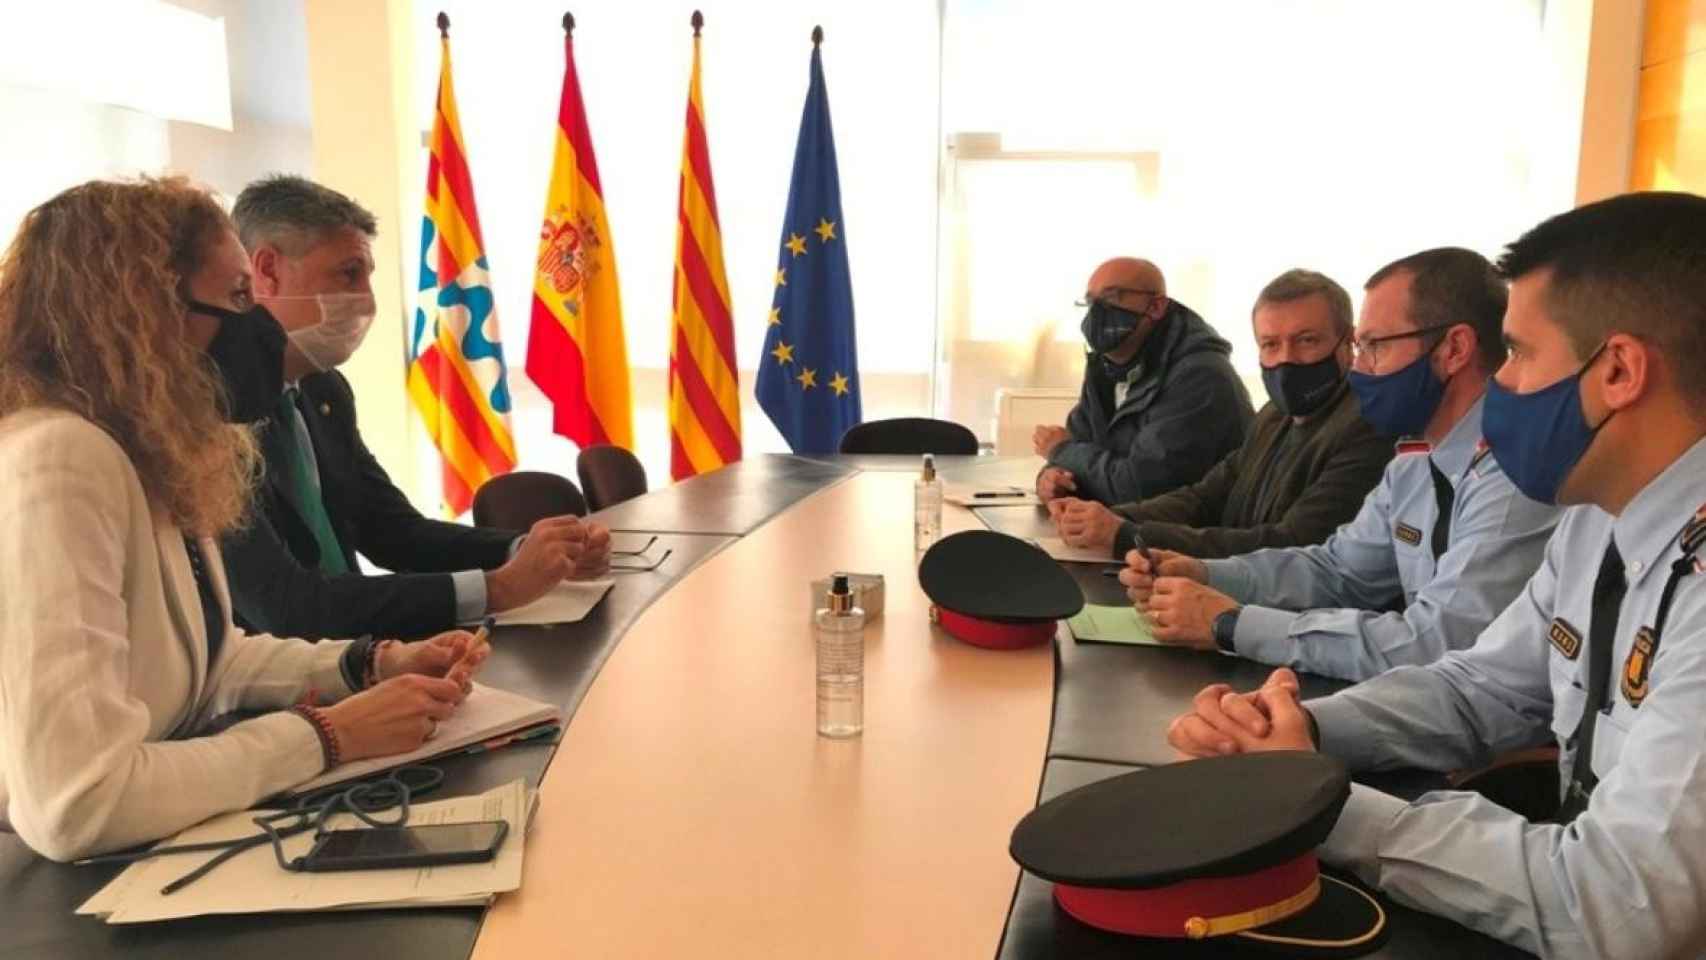 El alcalde de Badalona, Xavier Garcia Albiol en la reunión con Mossos y Guardia Urbana / EP